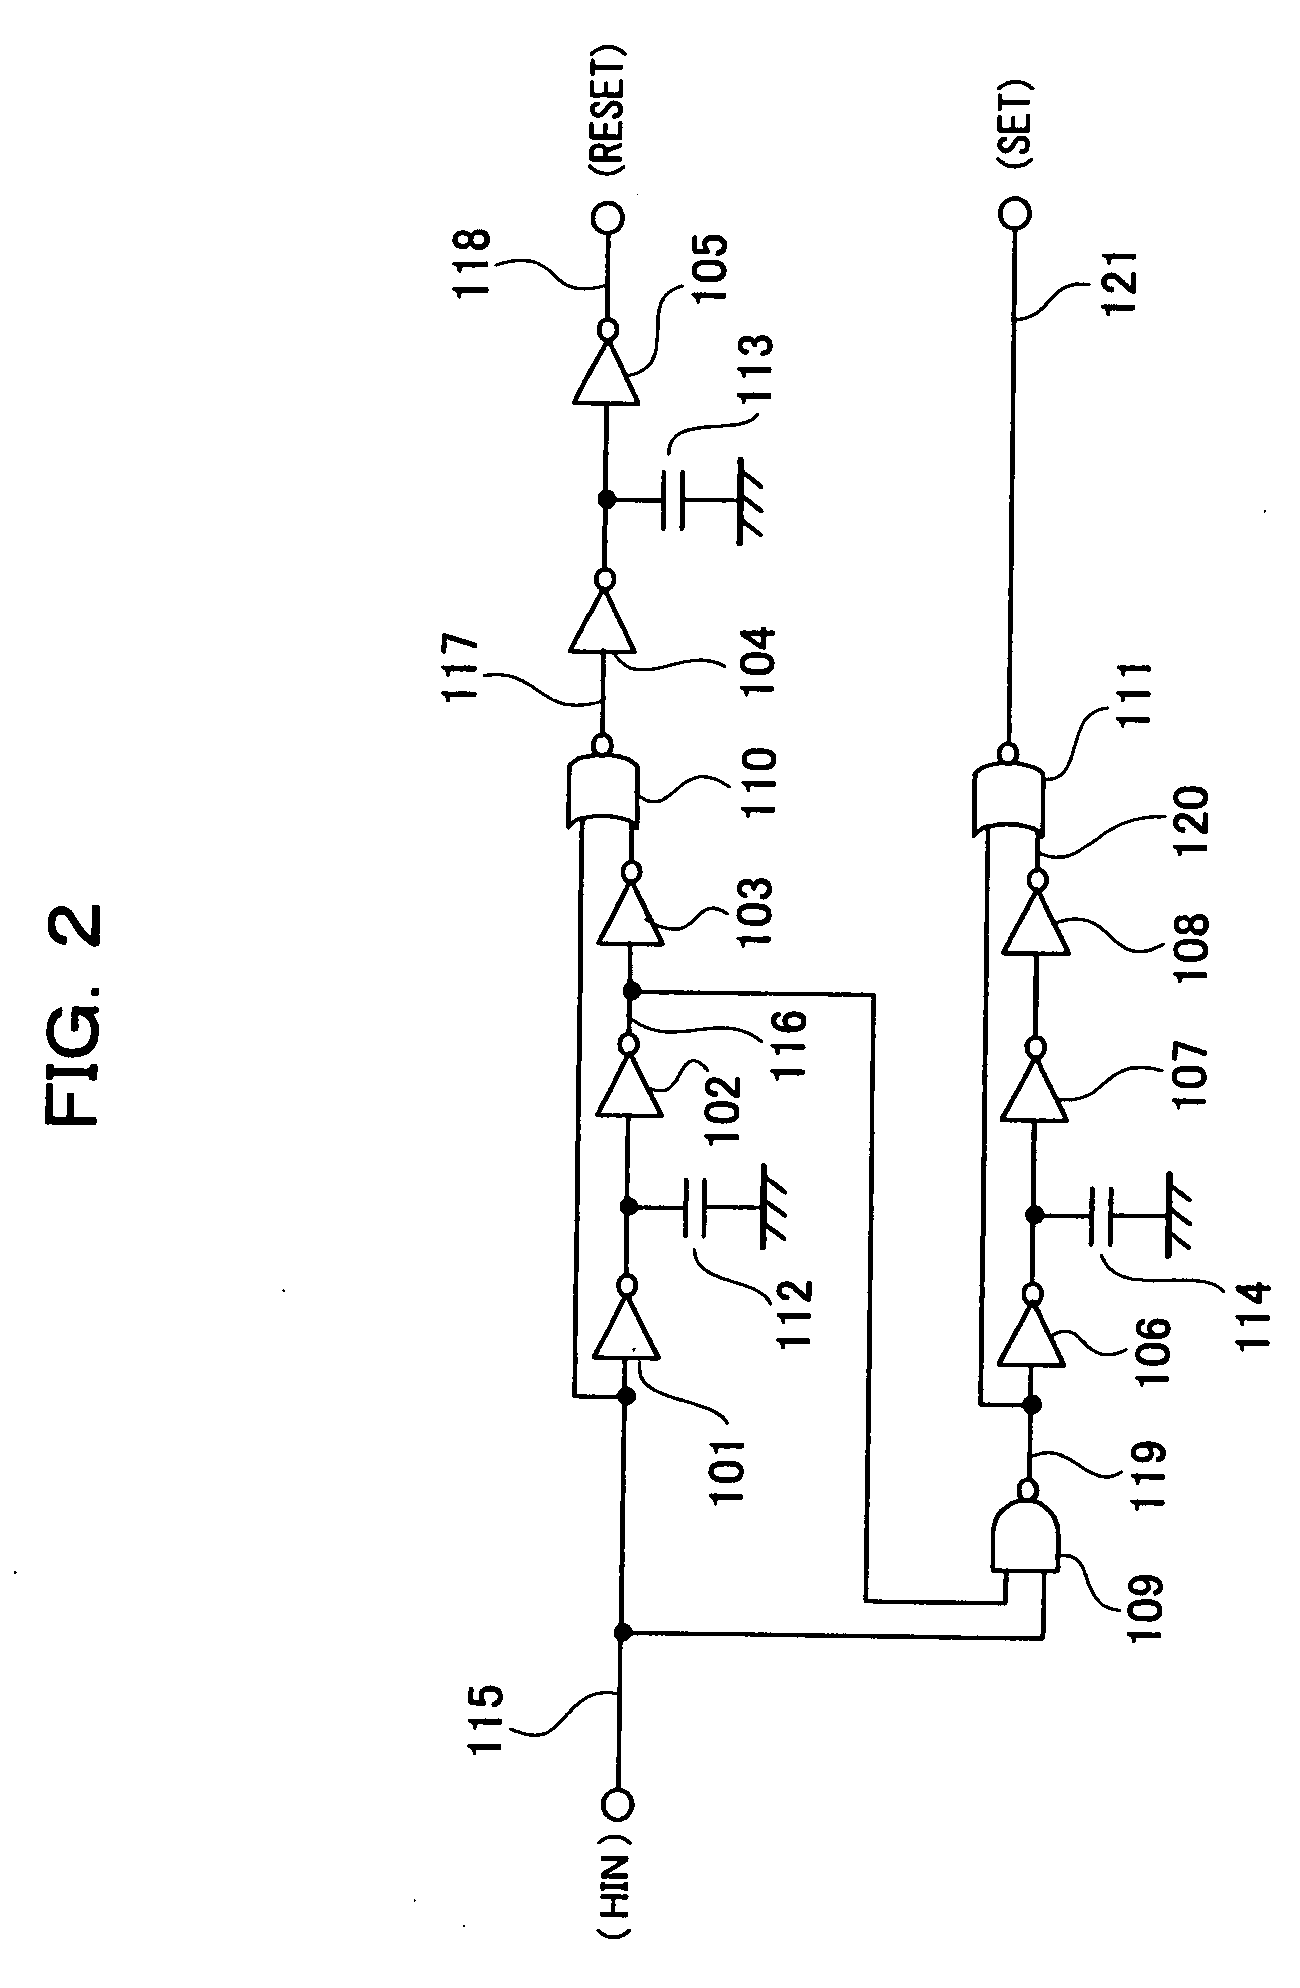 Switching transistor driver circuit